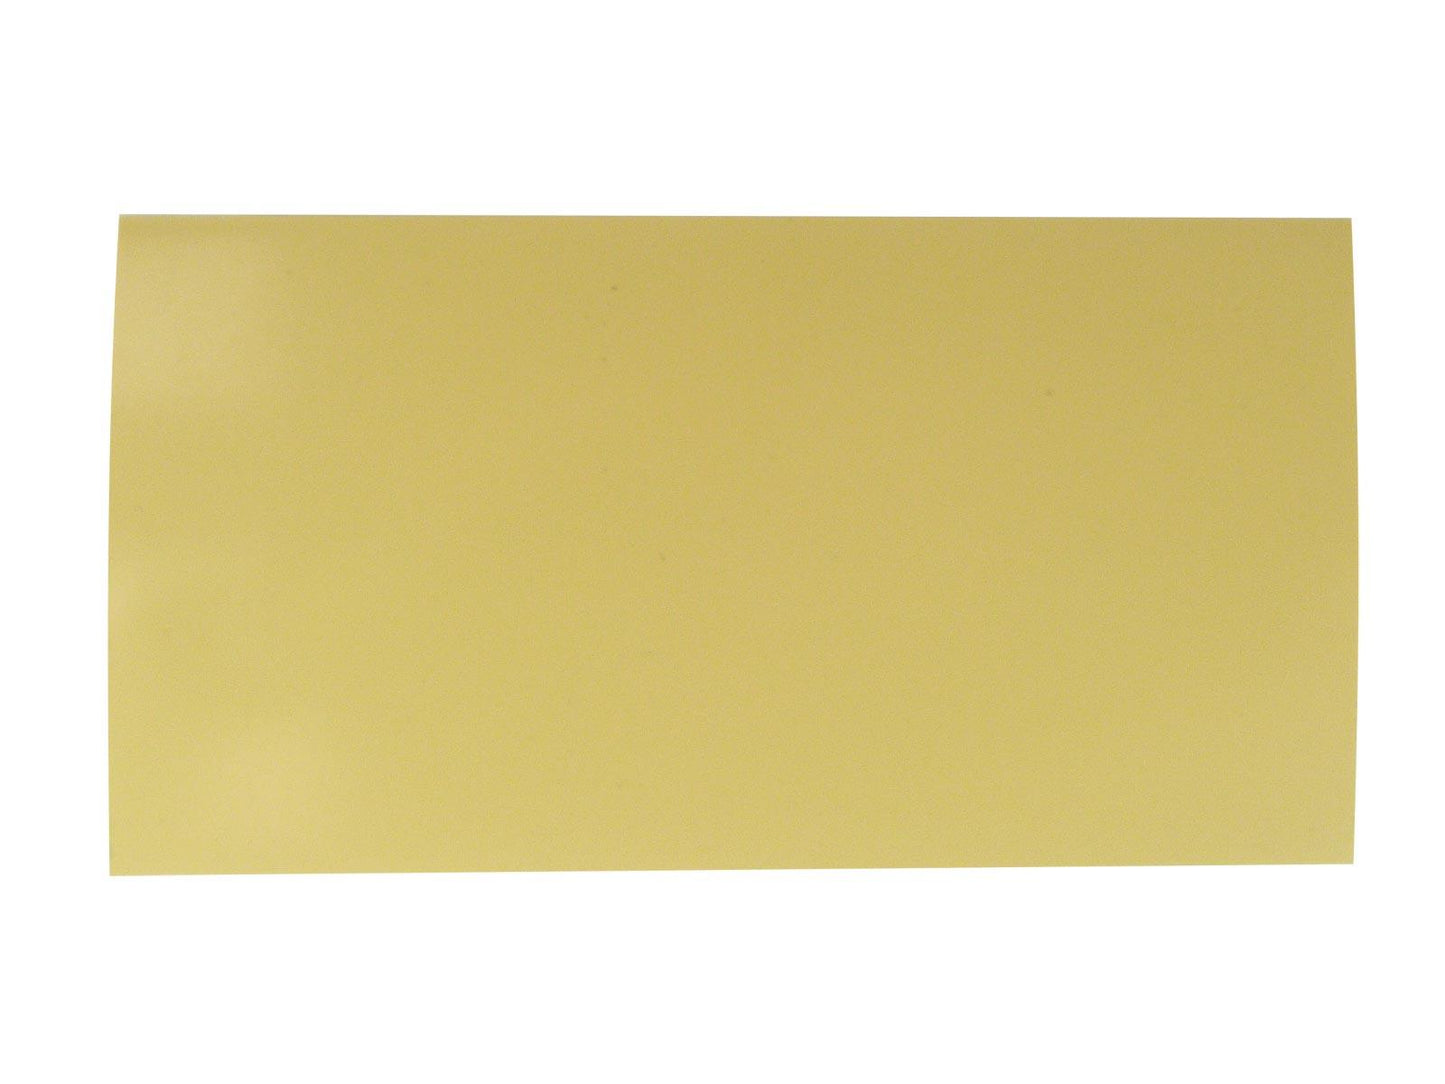 Incudo Cream Plain CAB Sheet - 200x100x1.5mm (7.9x3.94x0.06")